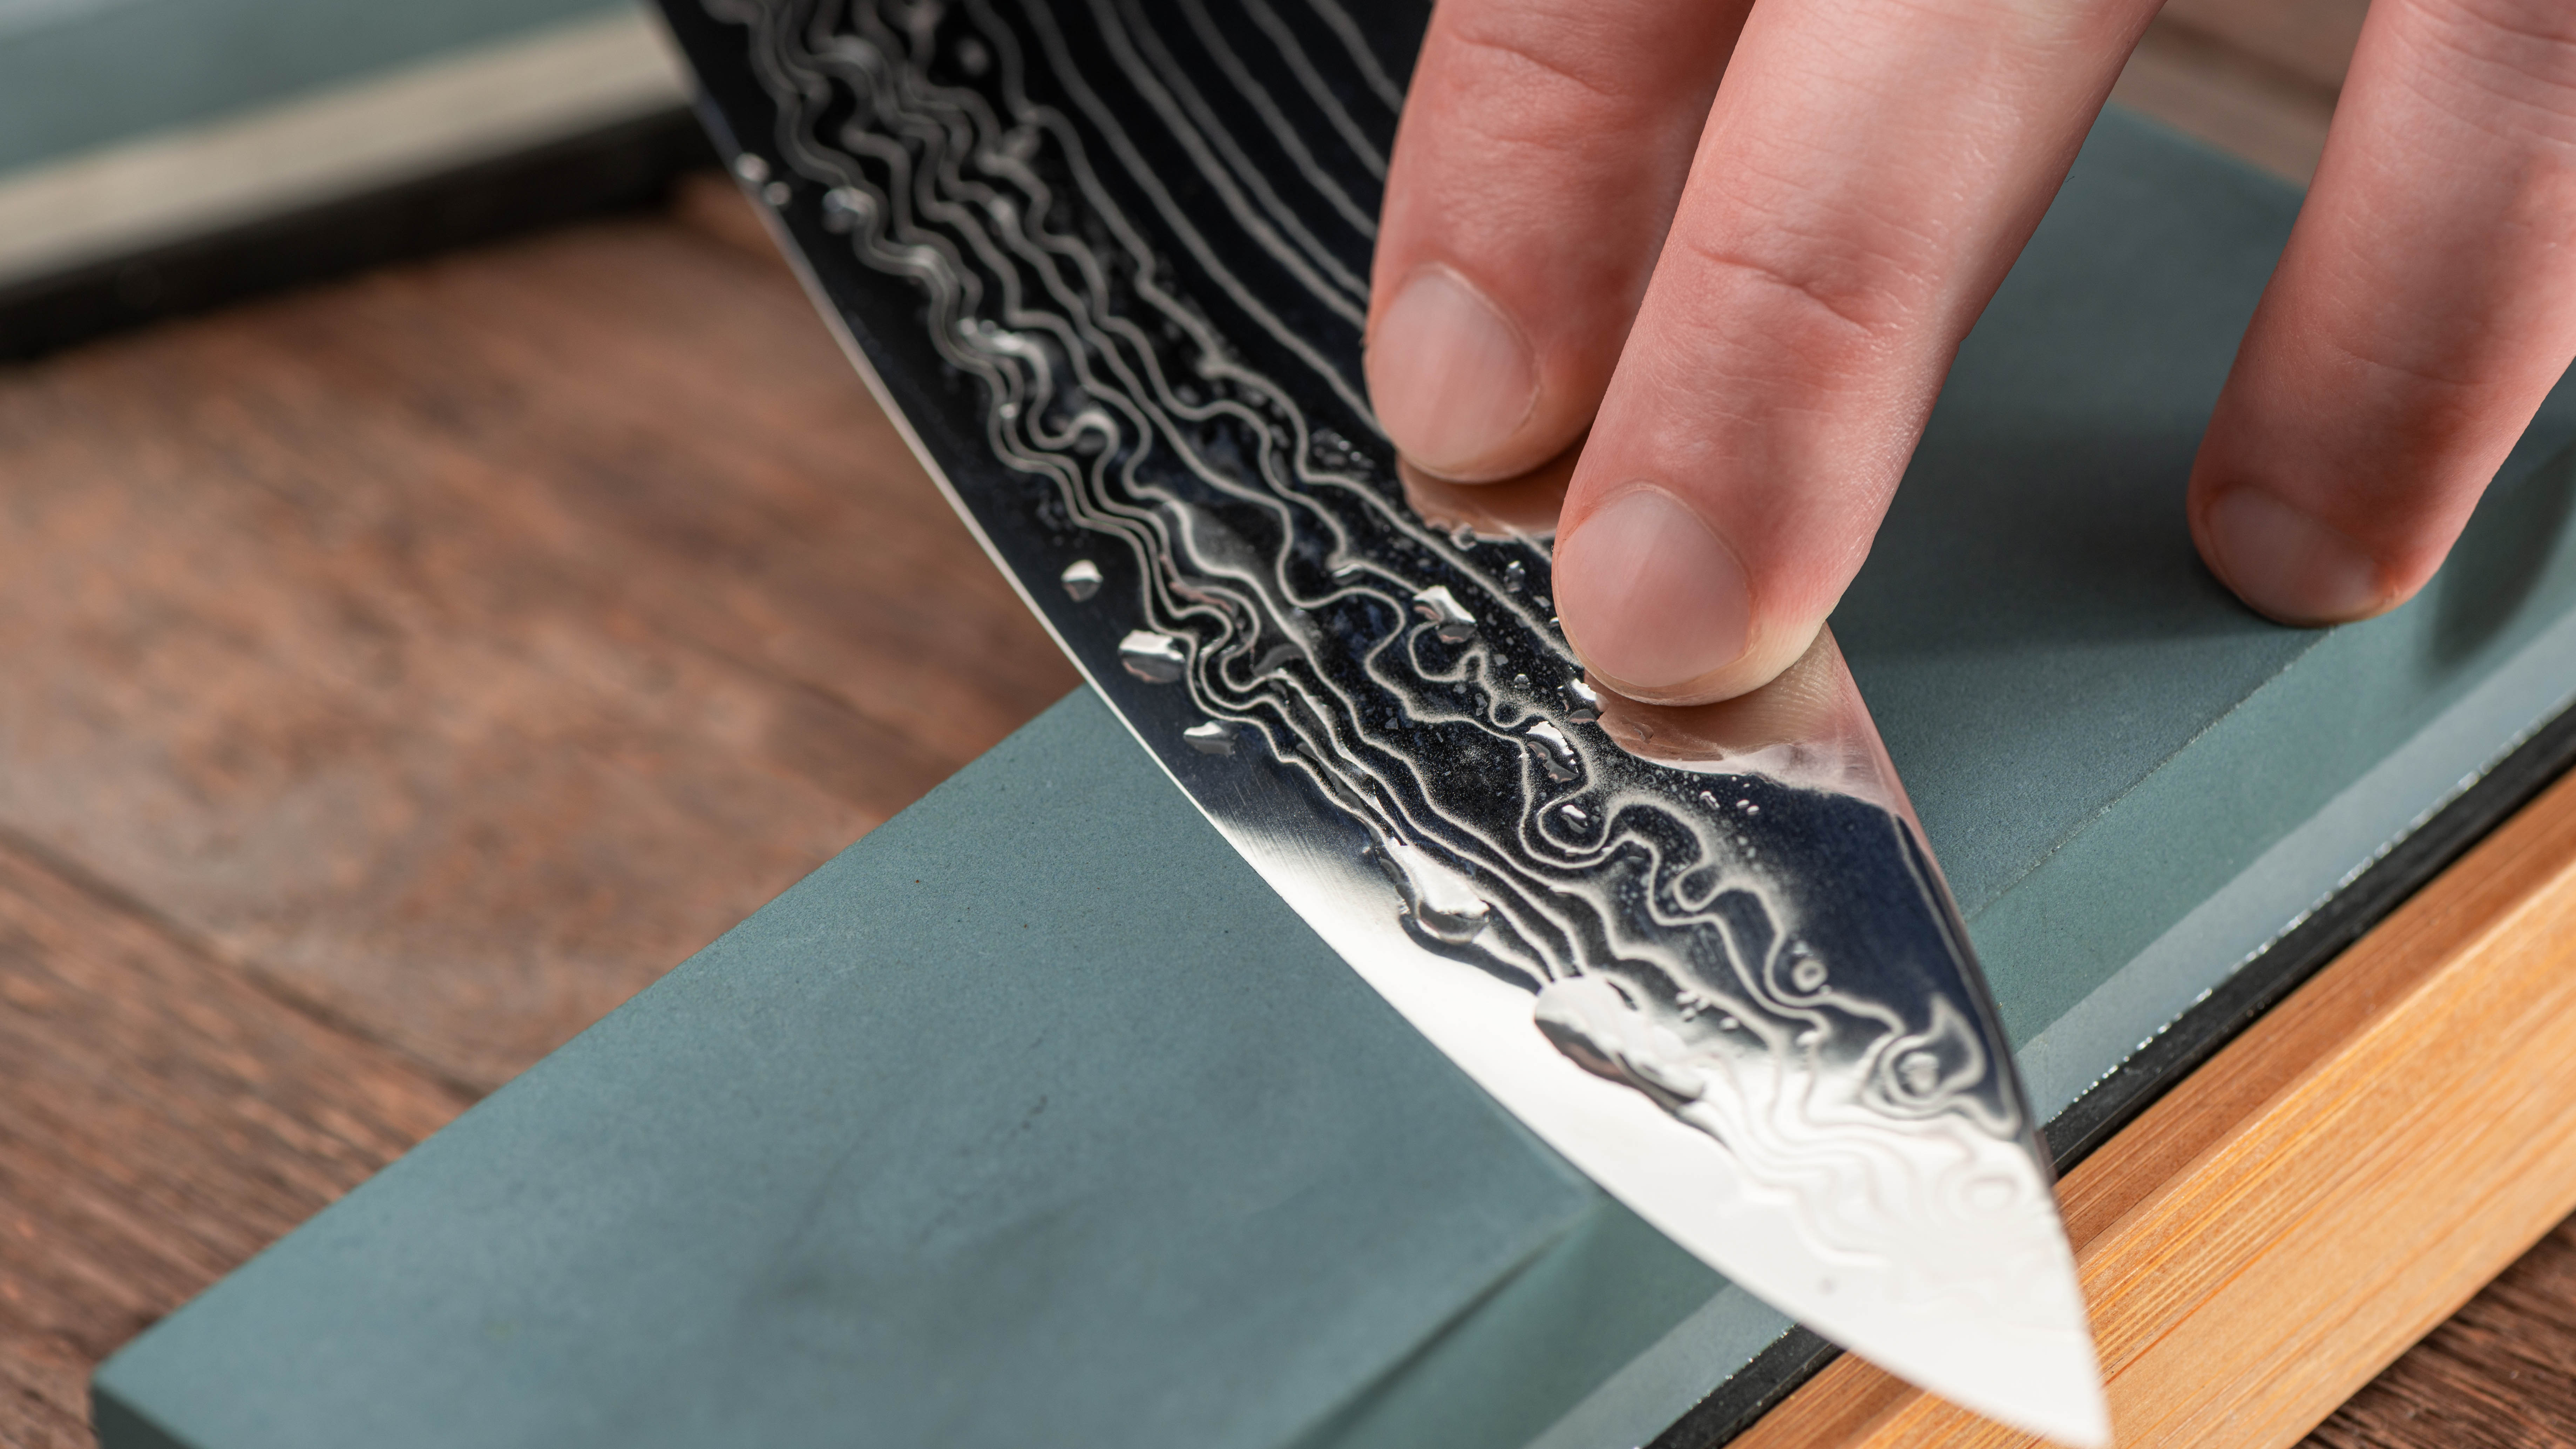 knife sharpening on a grindstone